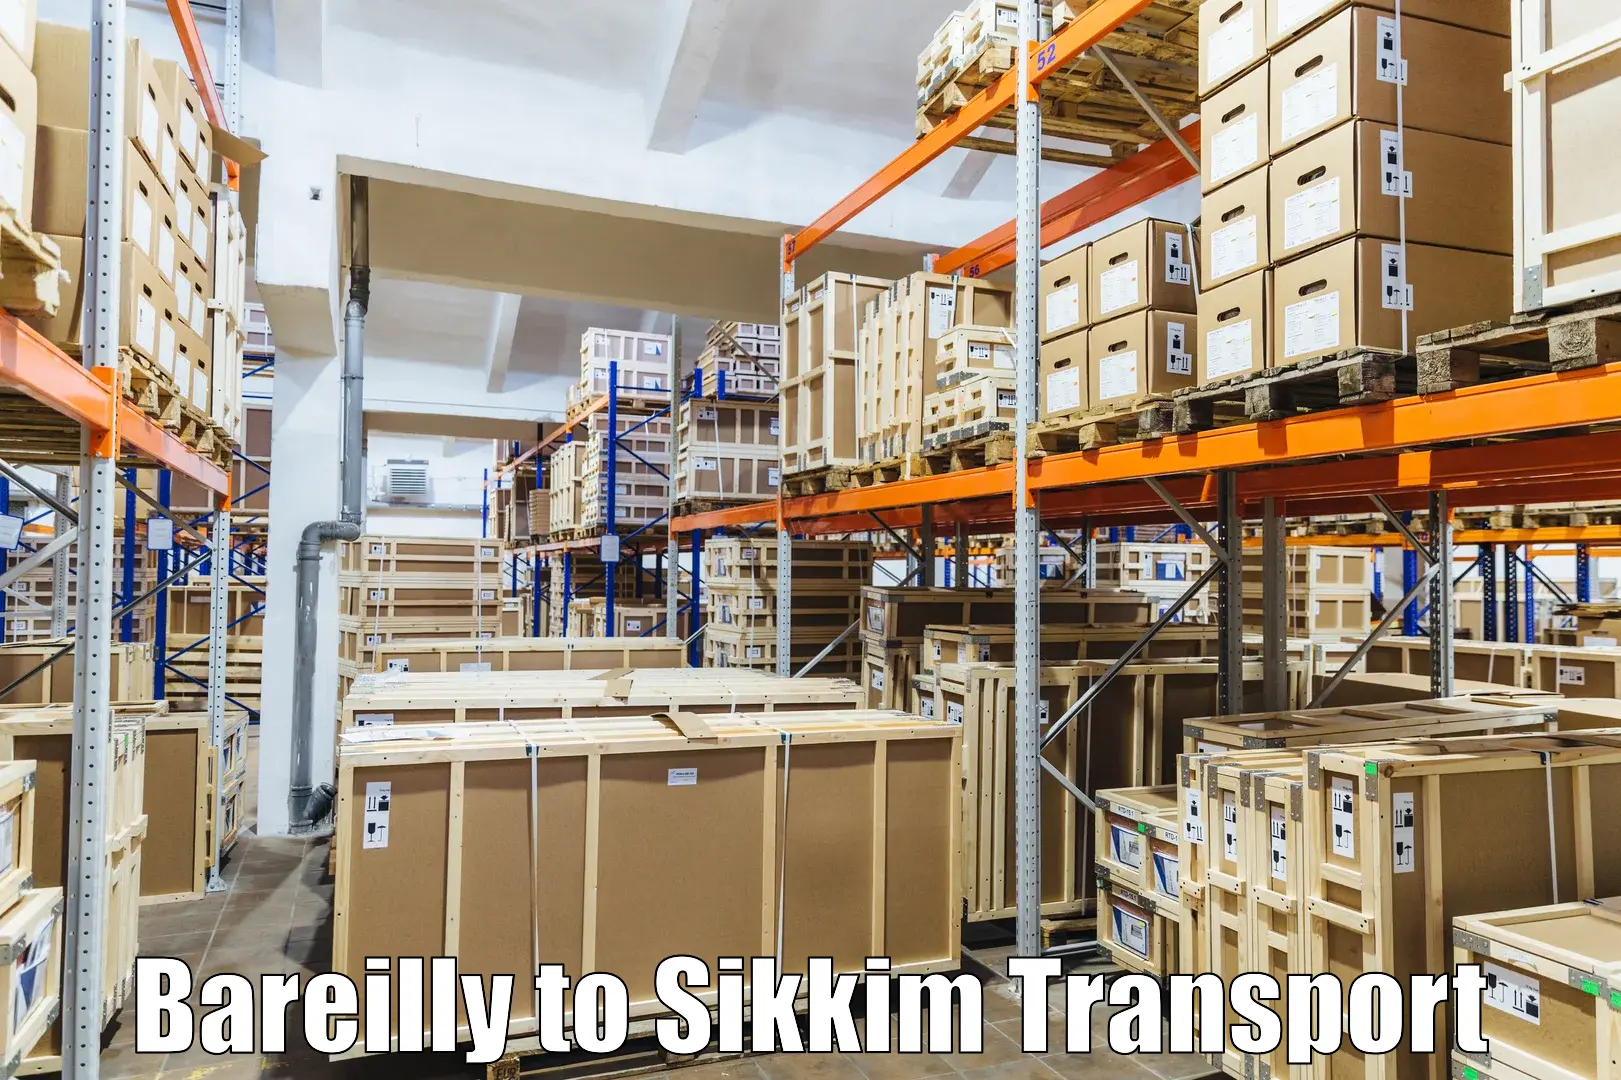 Furniture transport service Bareilly to Mangan